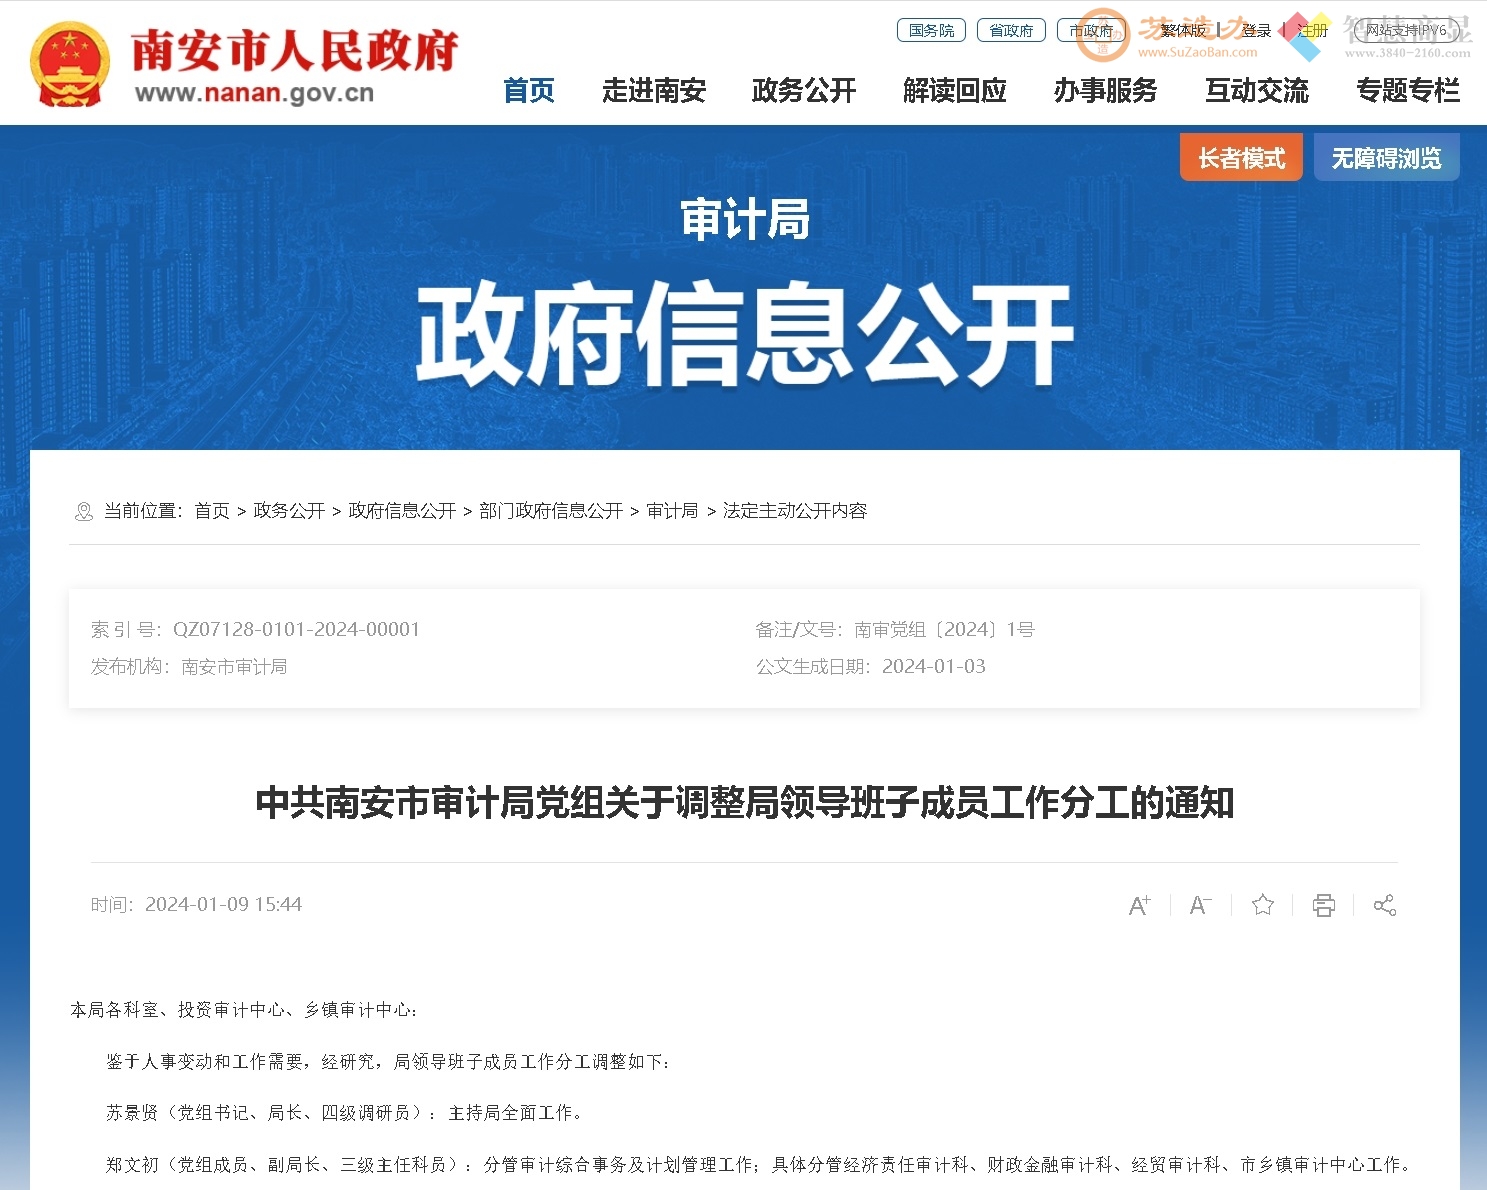 中共南安市审计局党组关于调整局领导班子成员工作分工的通知